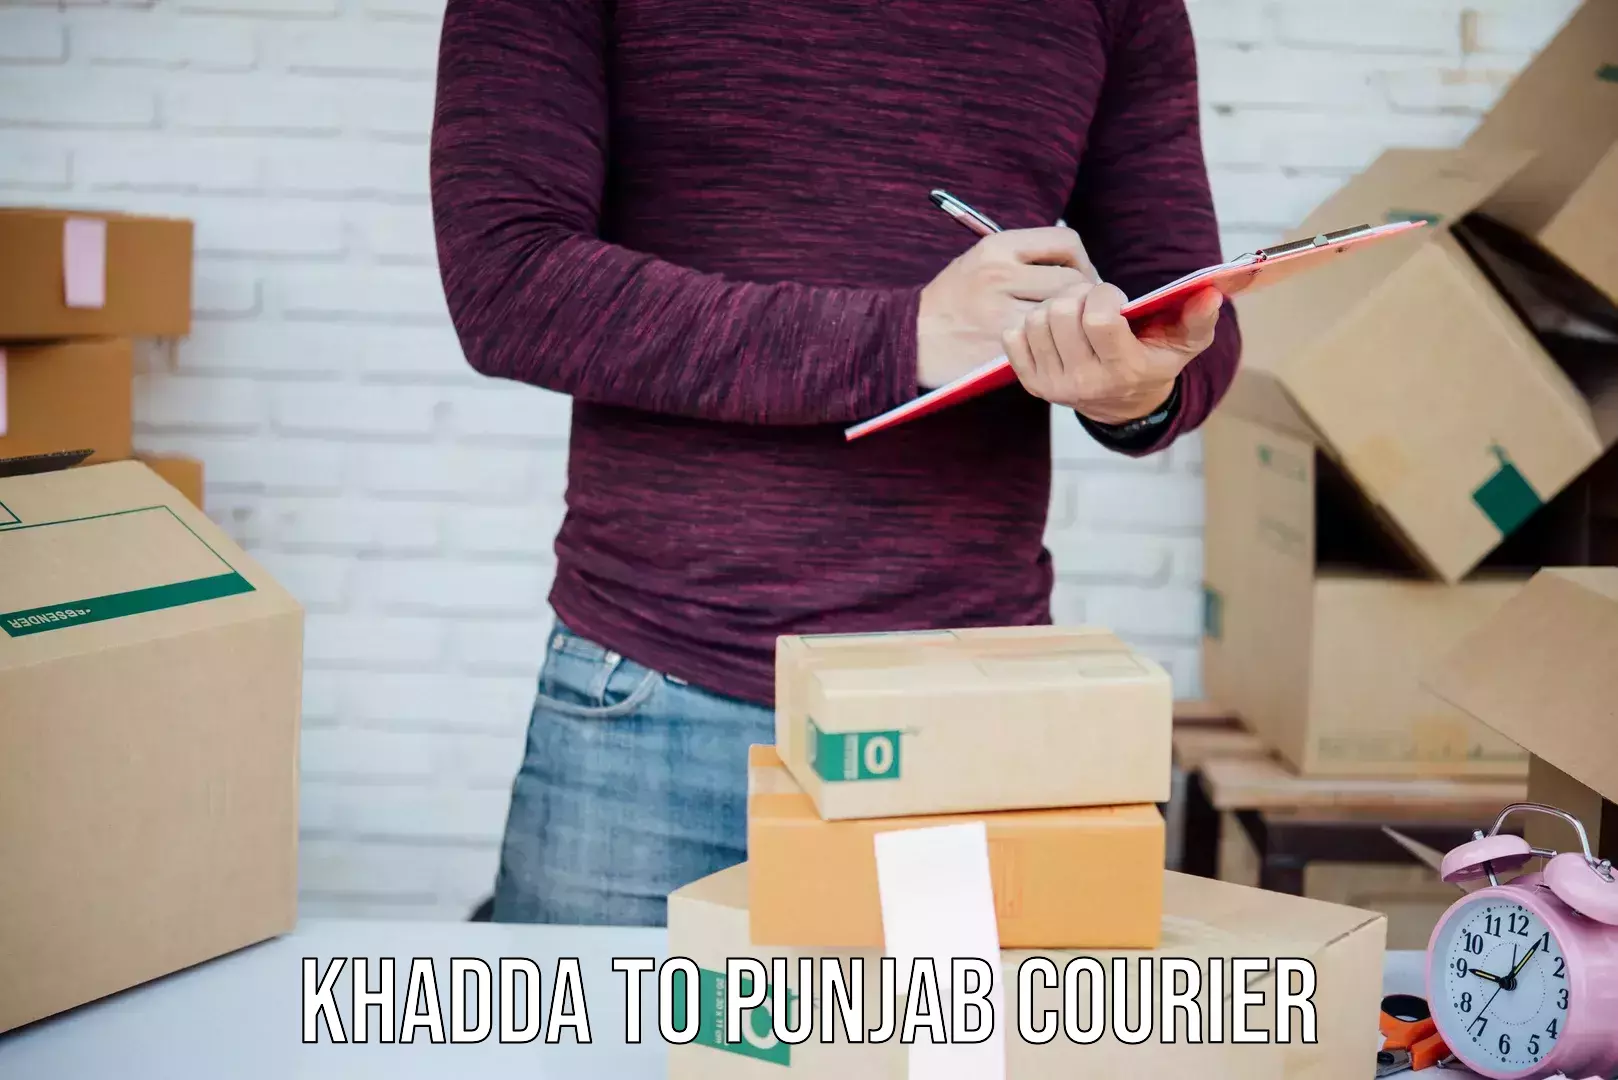 Cargo courier service Khadda to Tarsikka